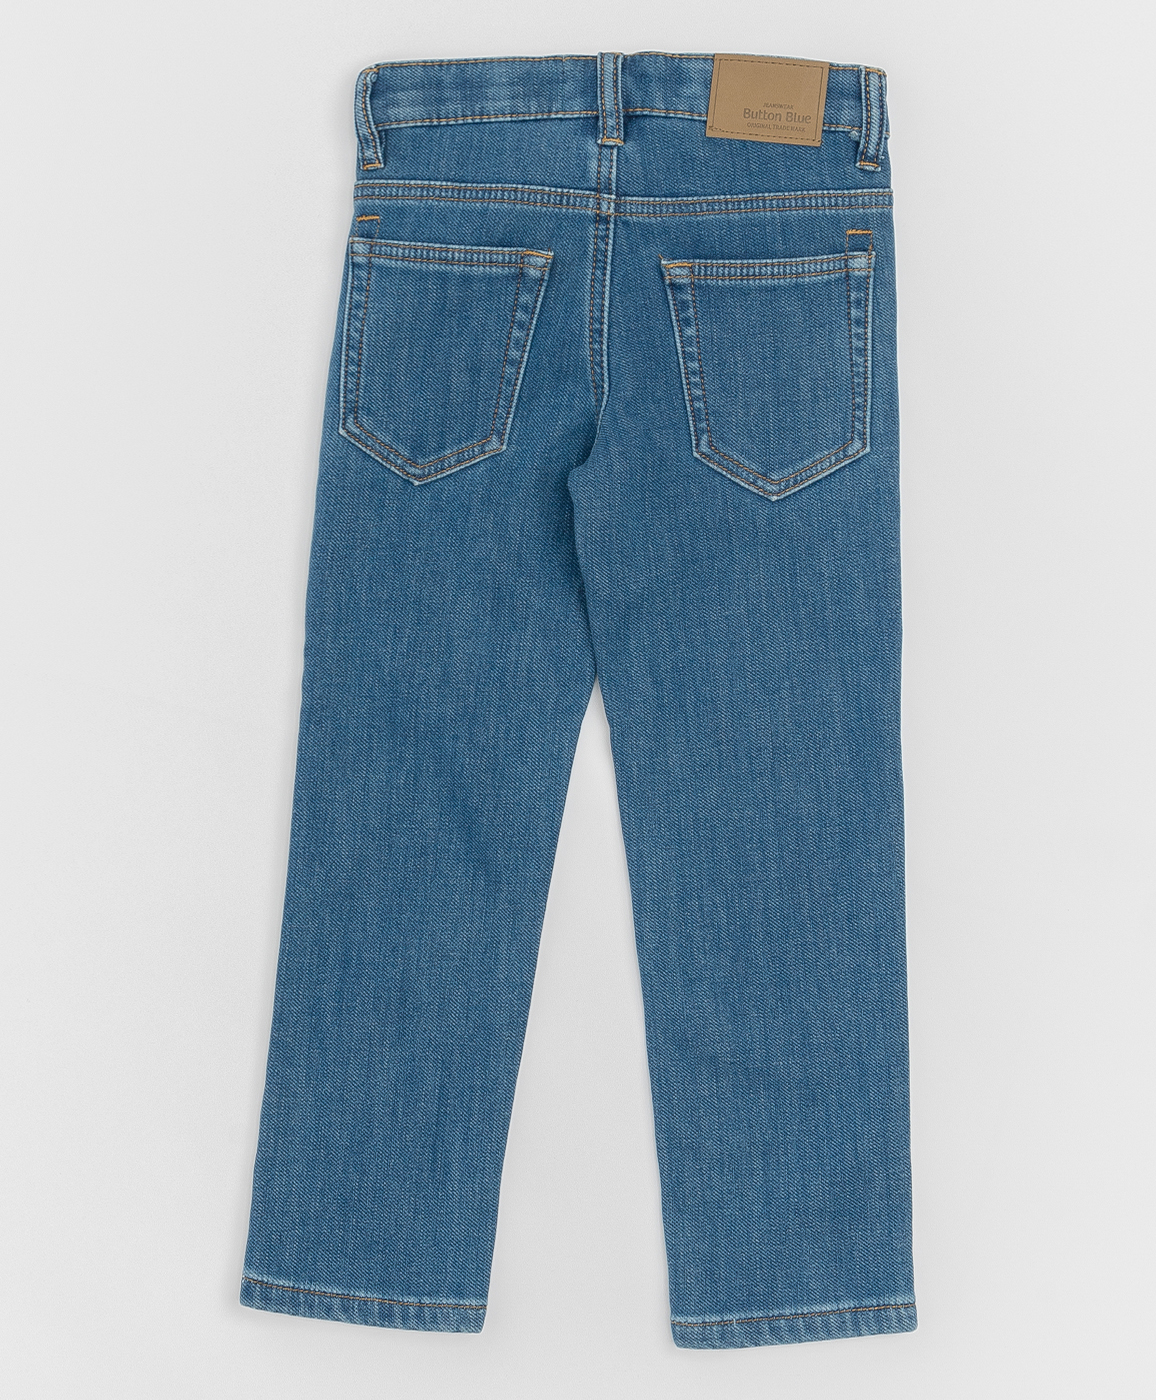 Синие джинсы, бондированные флисом Button Blue 220BBBMC6401D100, размер 104, цвет синий regular fit / прямые - фото 2